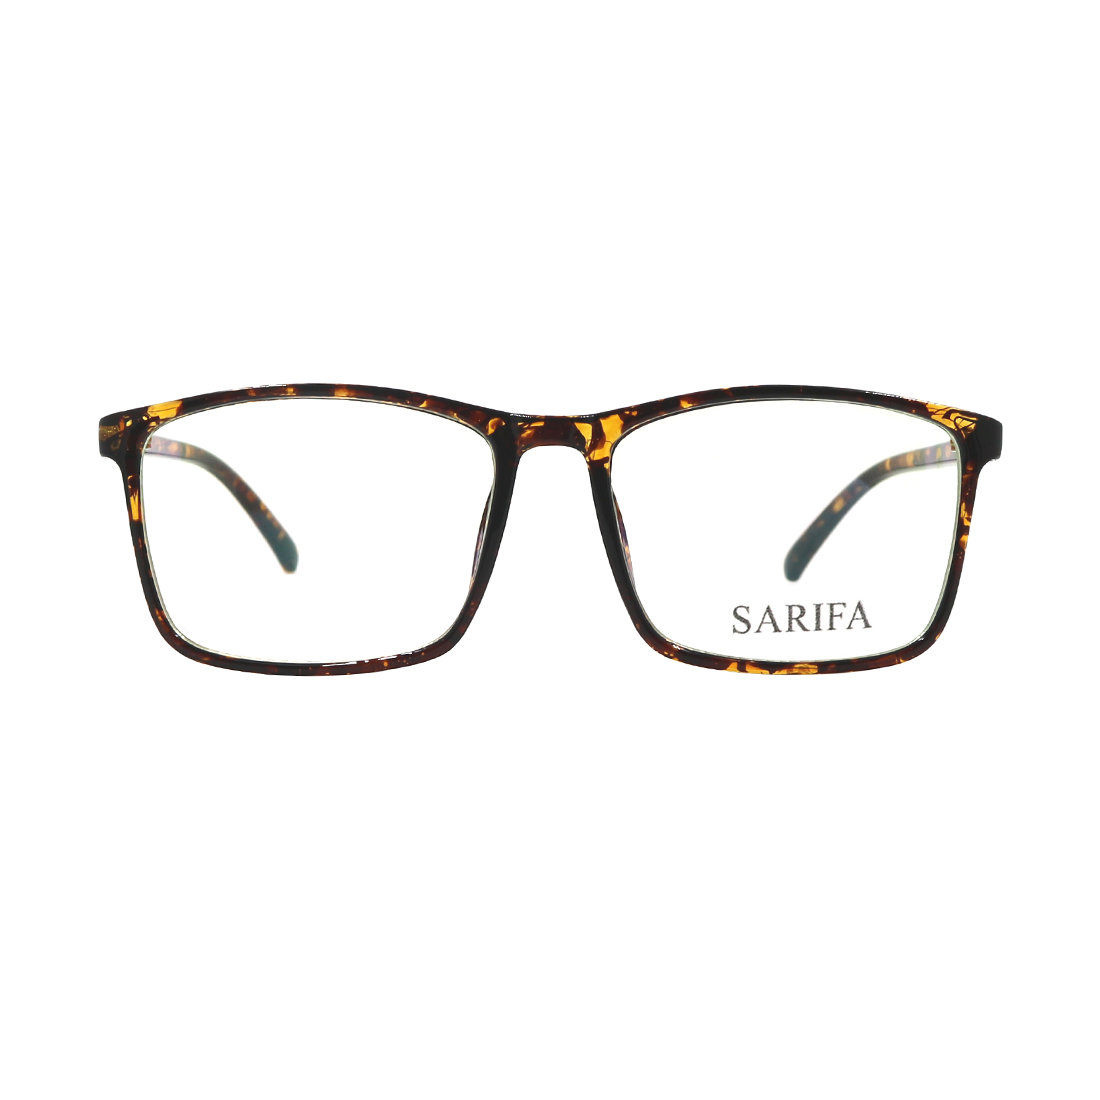 Gọng kính, mắt kính SARIFA 2398 C3 (55-16-130), thích hợp làm kính cận hoặc kính thời trang